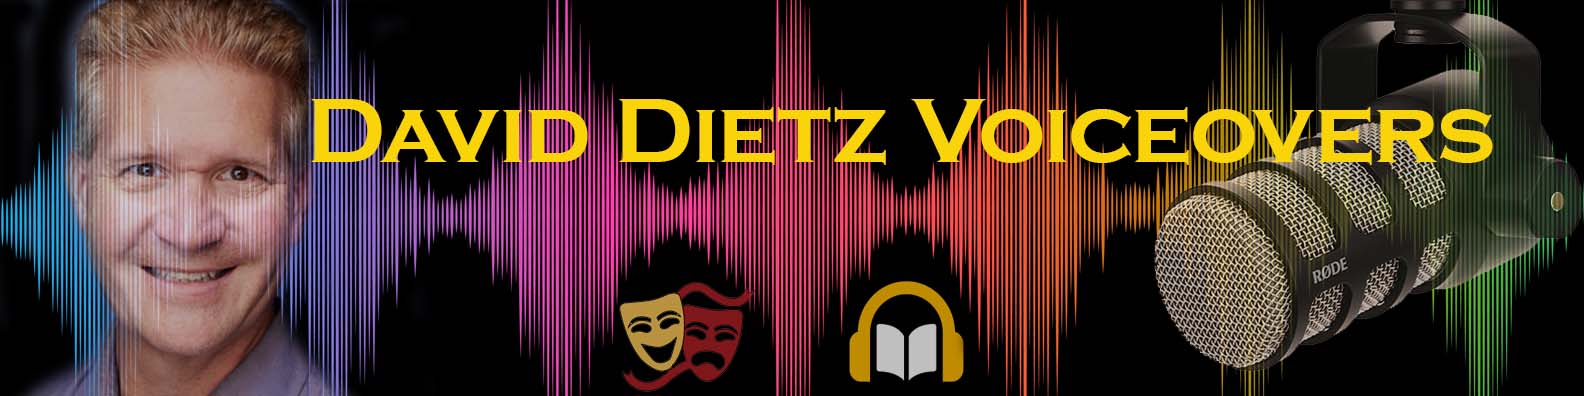 David Dietz Voice Overs